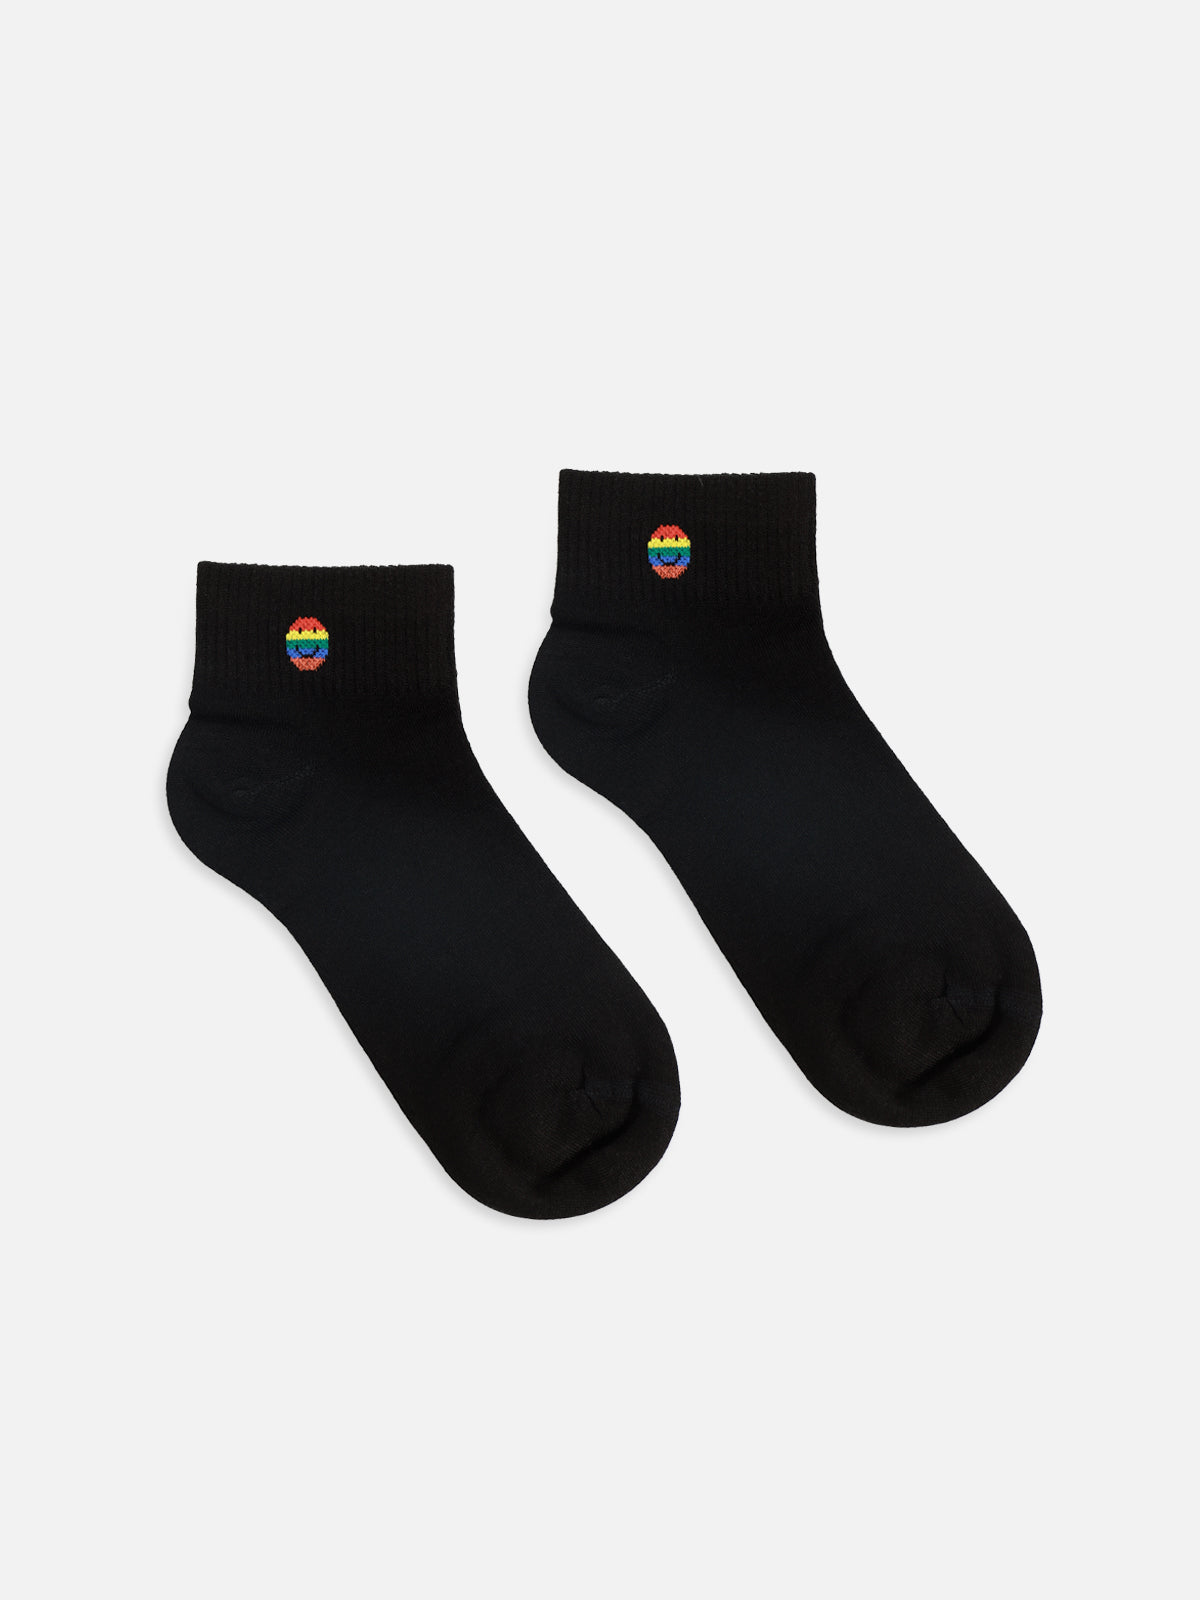 Black Ankle Sock - FWAS23-006